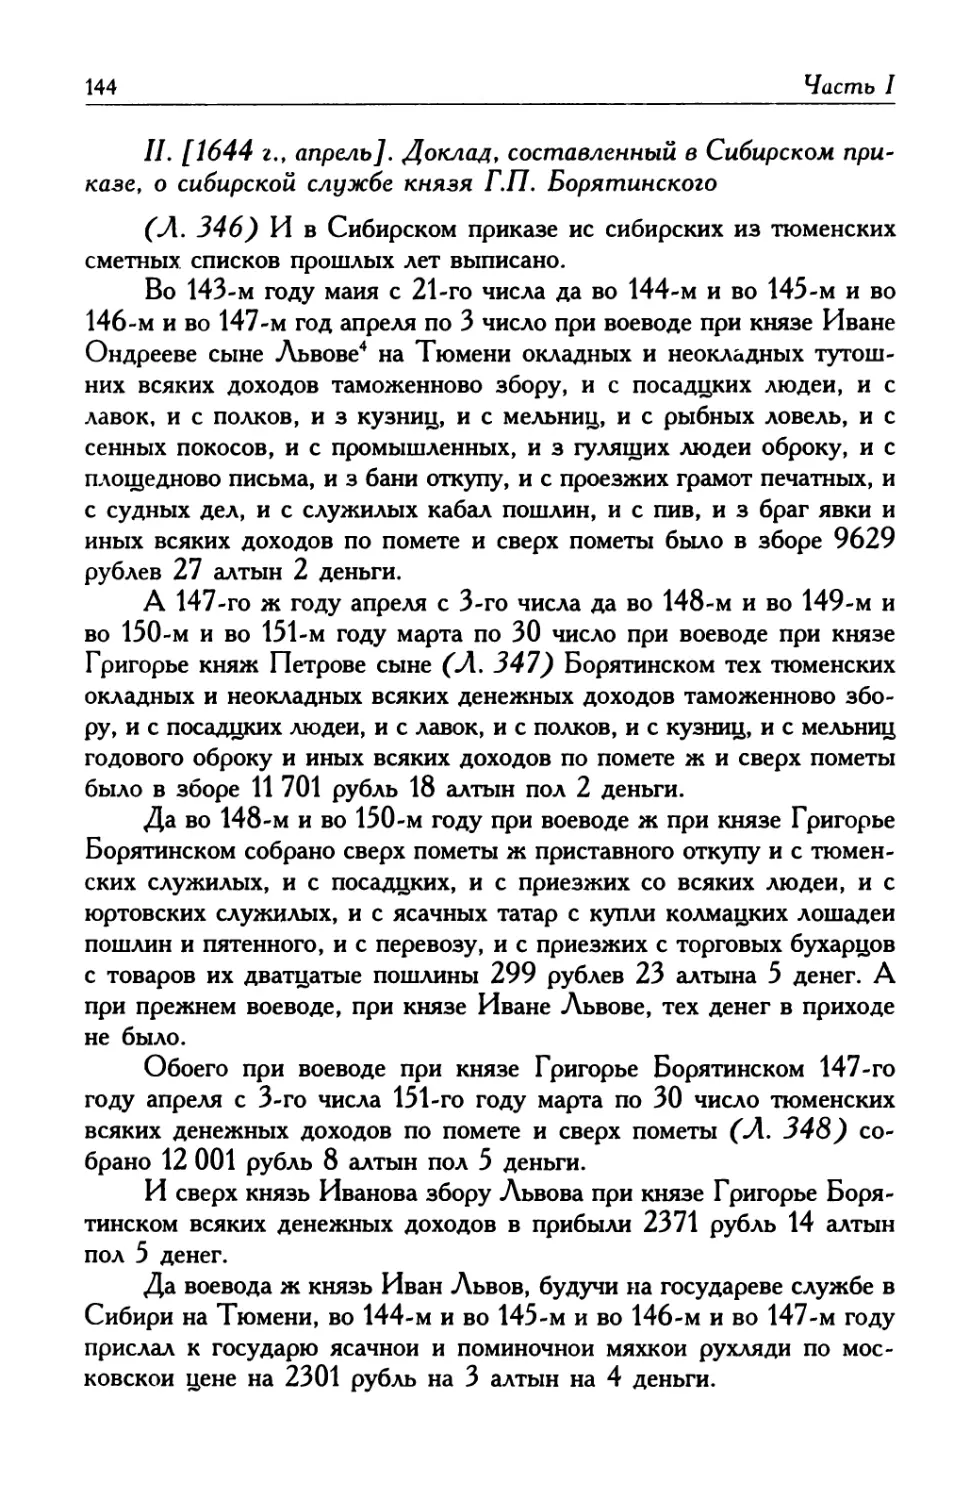 II. [1644 г., апрель]. Доклад, составленный в Сибирском приказе, о сибирской службе князя Г. П. Борятинского